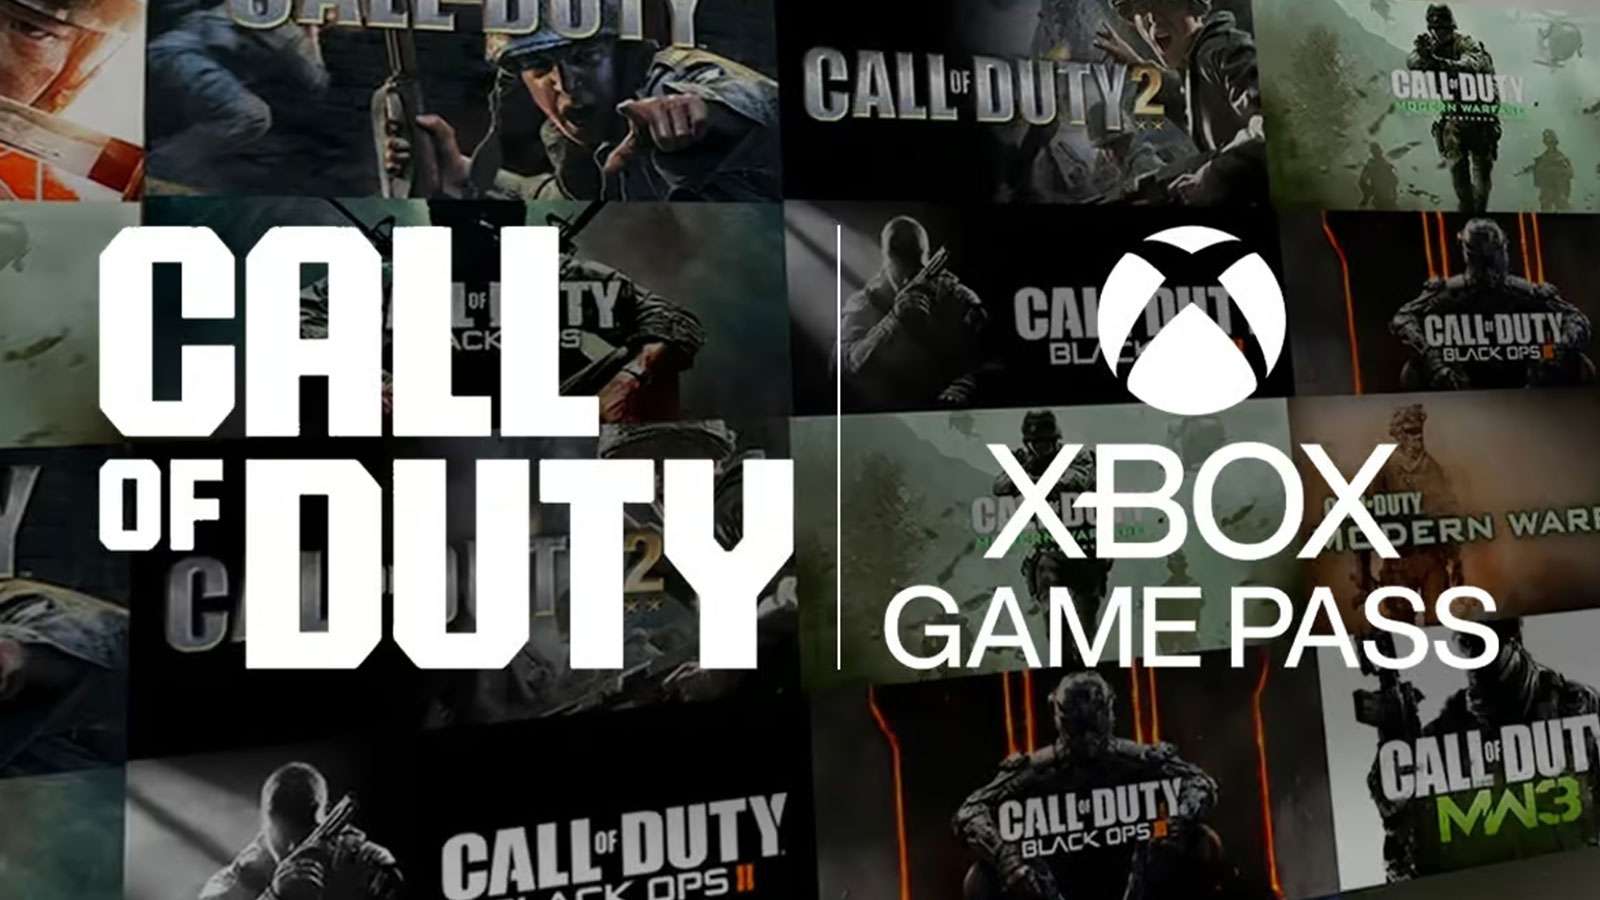 Regarder la vidéo Call of Duty sur le Xbox Game Pass : une grave erreur pour Microsoft ?